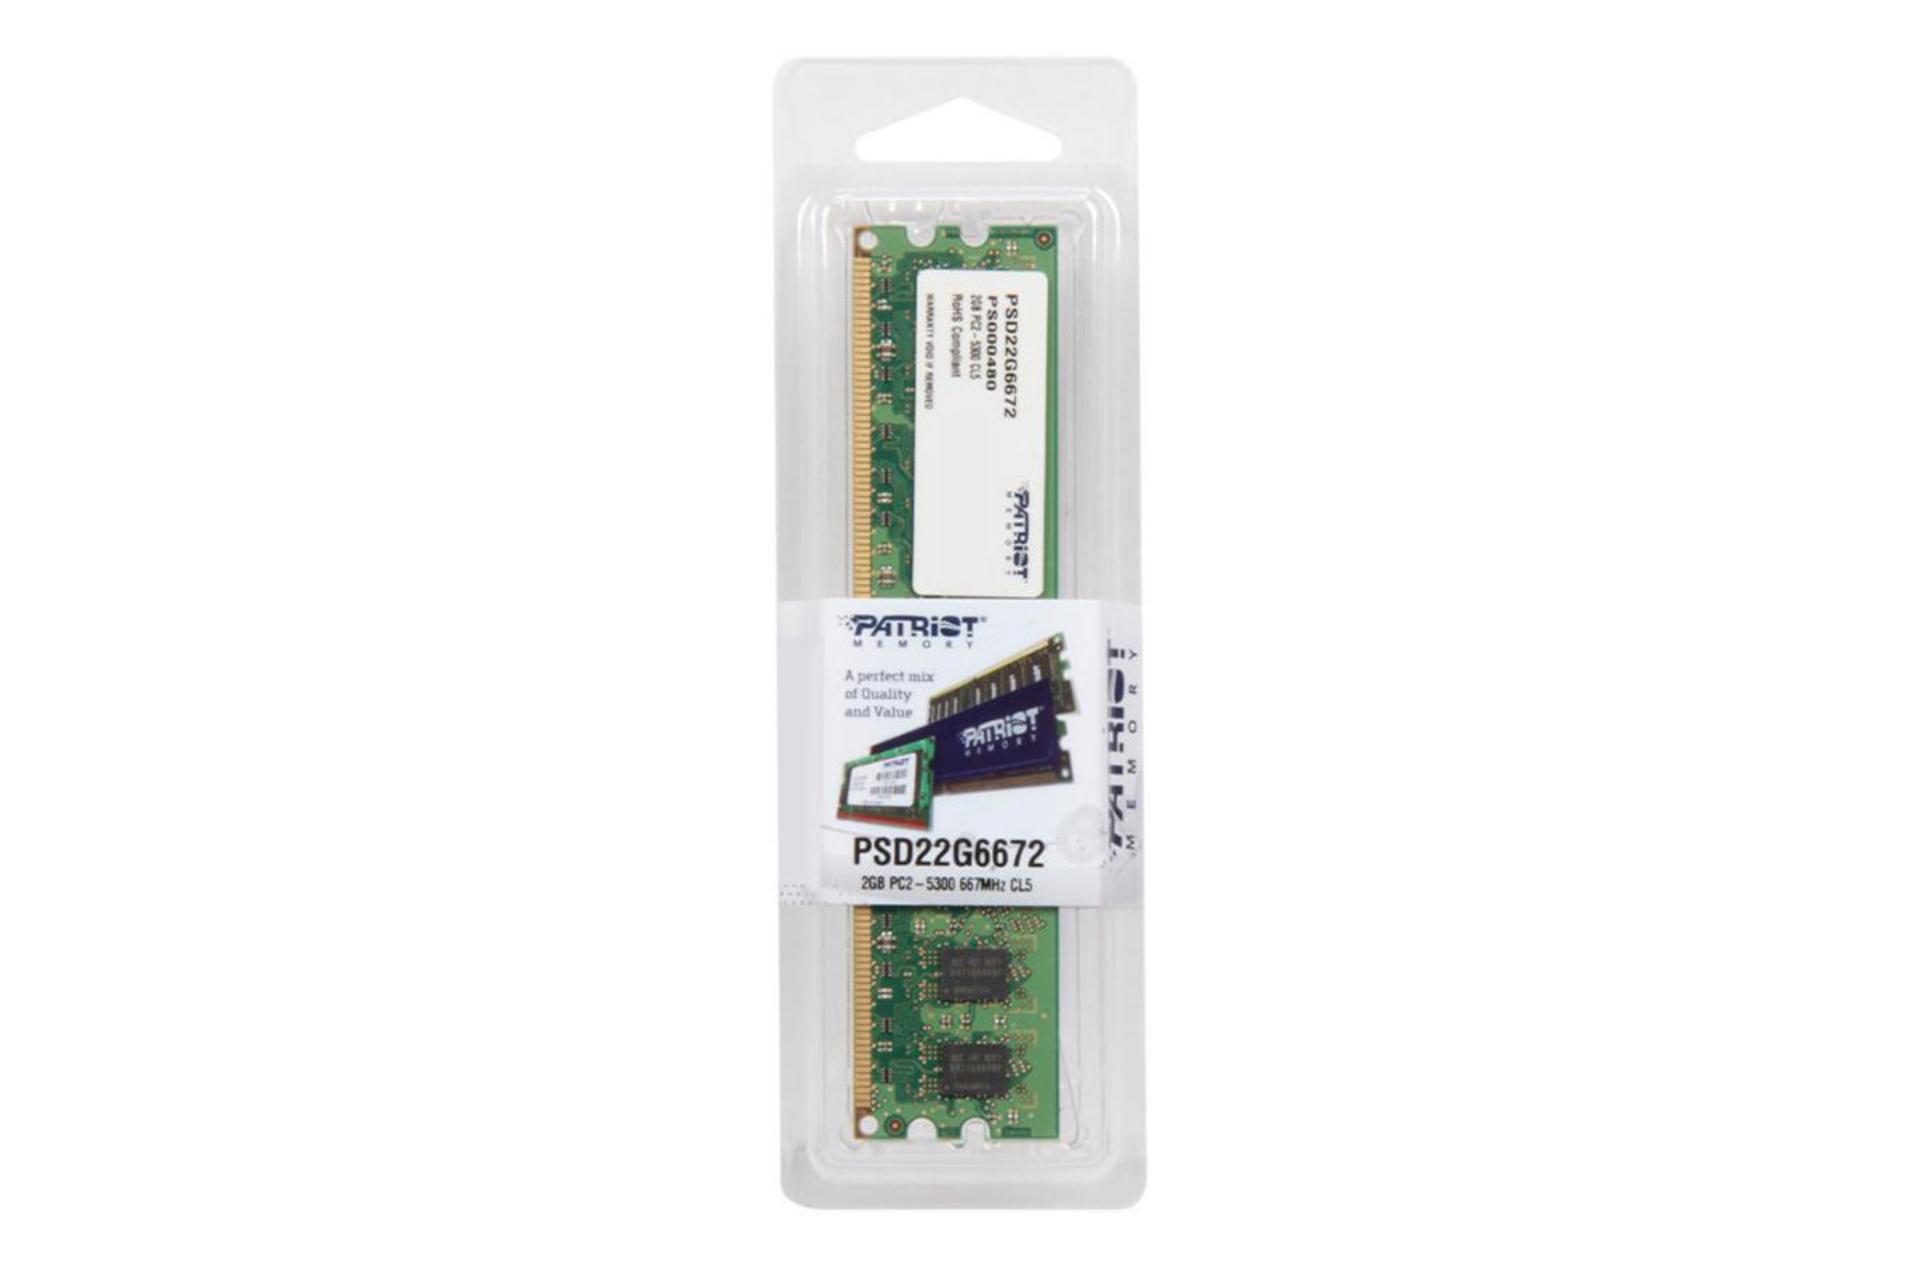 حافظه رم پاتریوت Signature ظرفیت 2 گیگابایت از نوع DDR2-667 بسته بندی